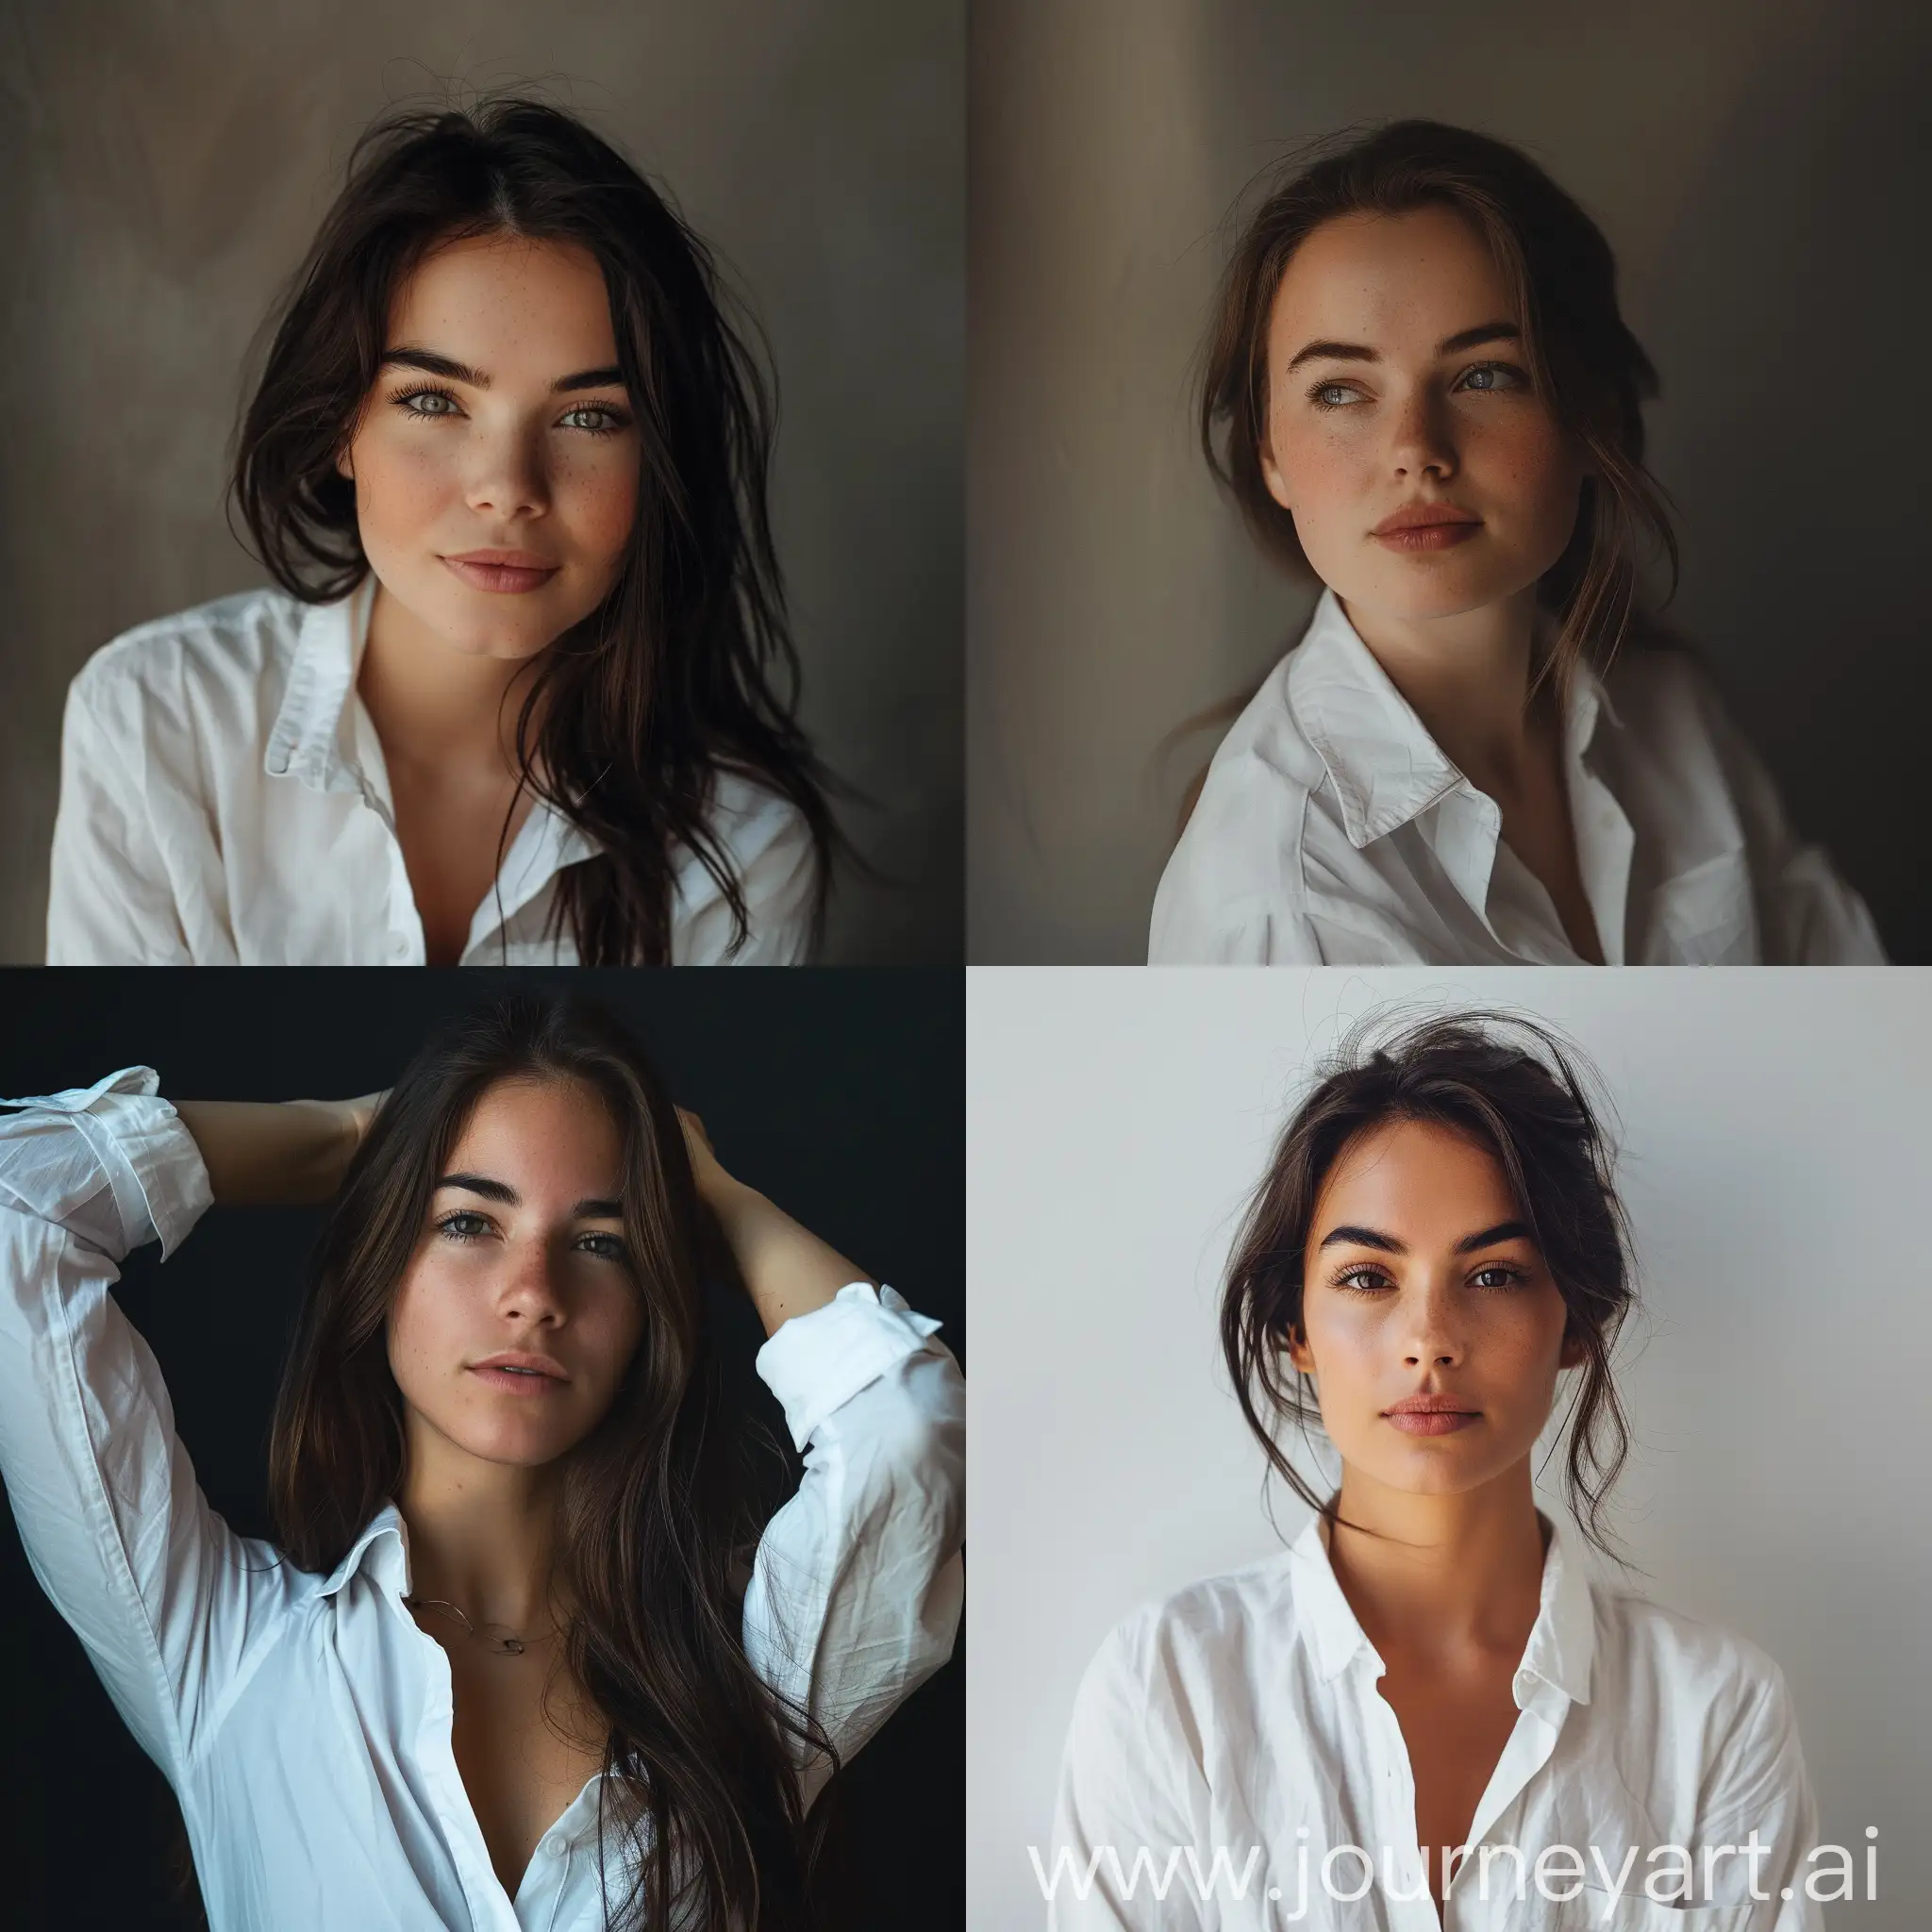 портретное реалистичное фото женщины в белой рубашке